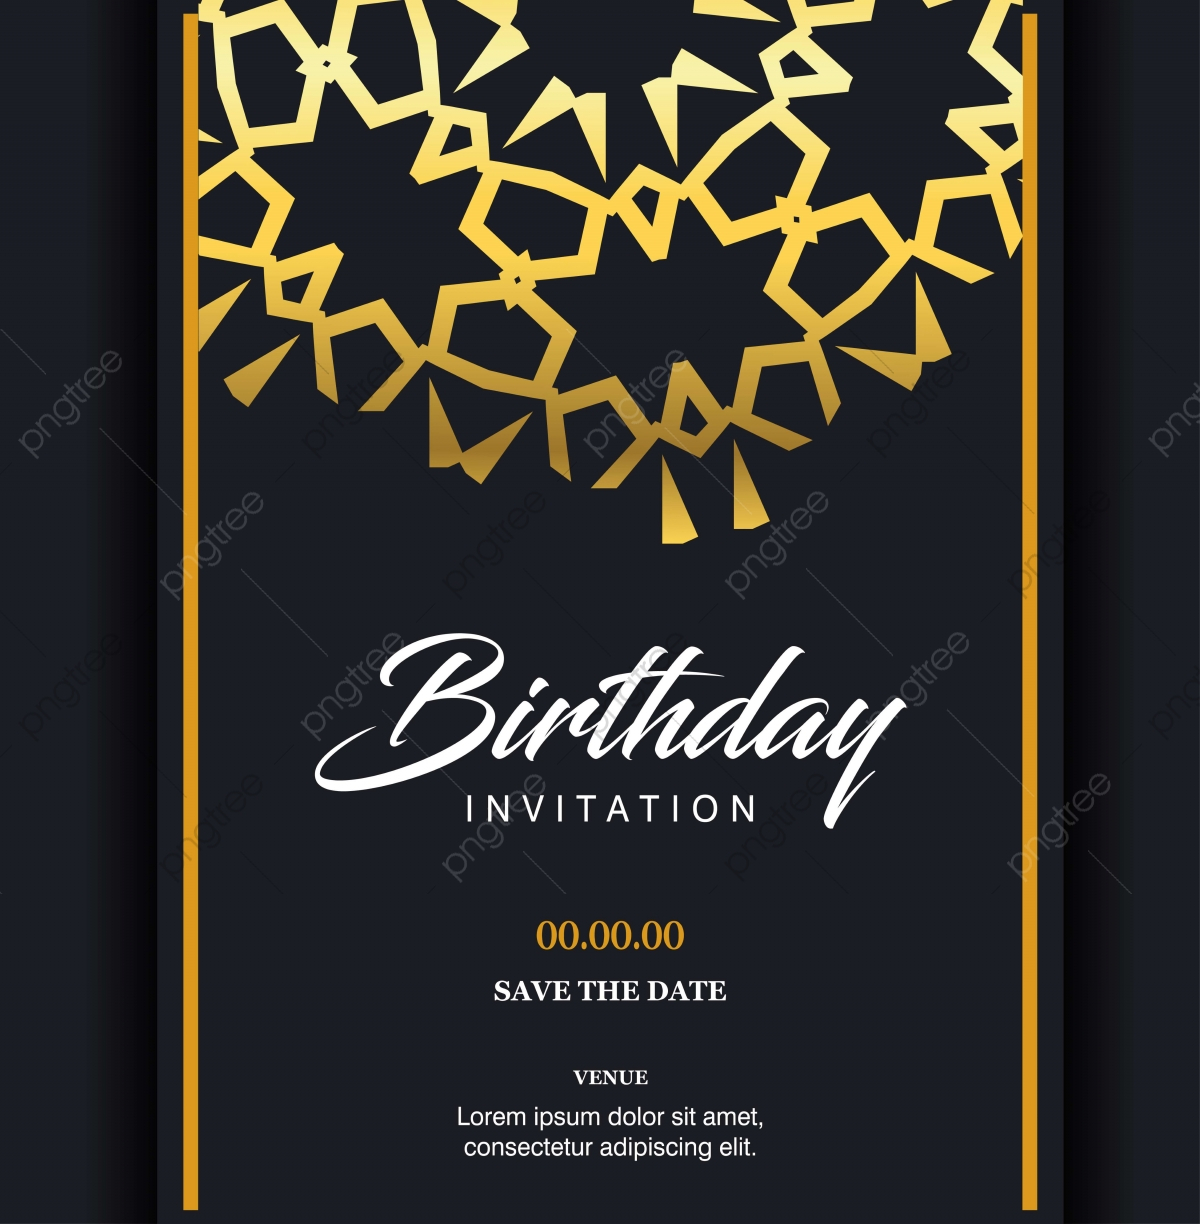 Birthday Cards Design Ideas Birthday Card Design Vector Birthday Card Birthday Card Ideas